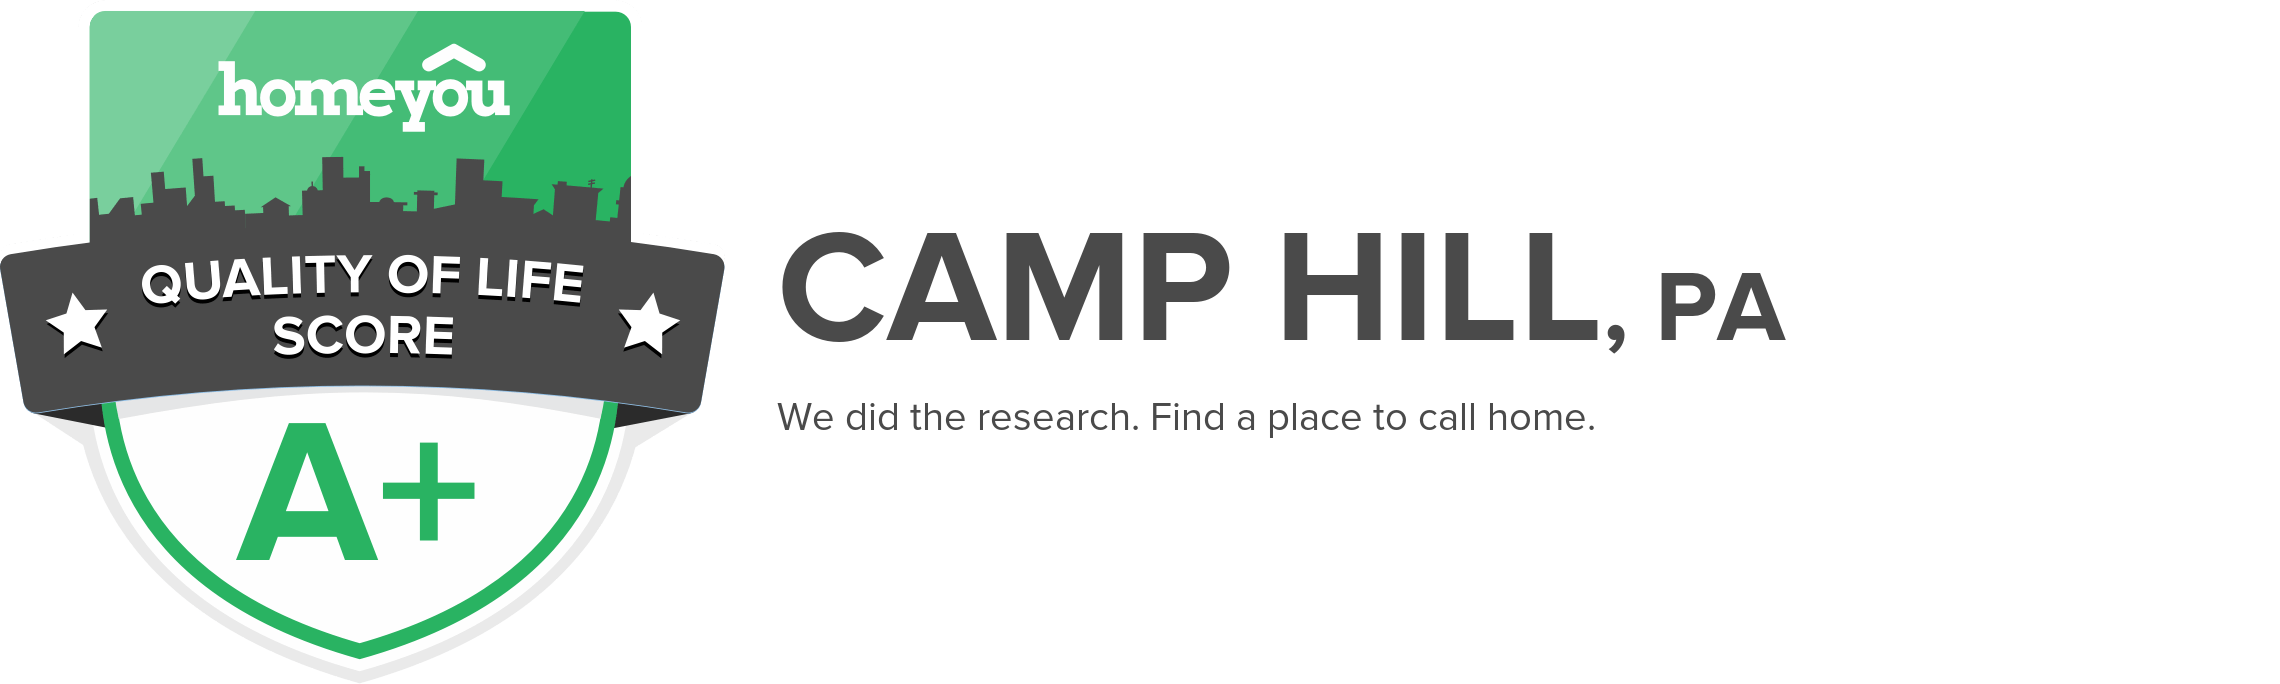 Camp Hill, PA